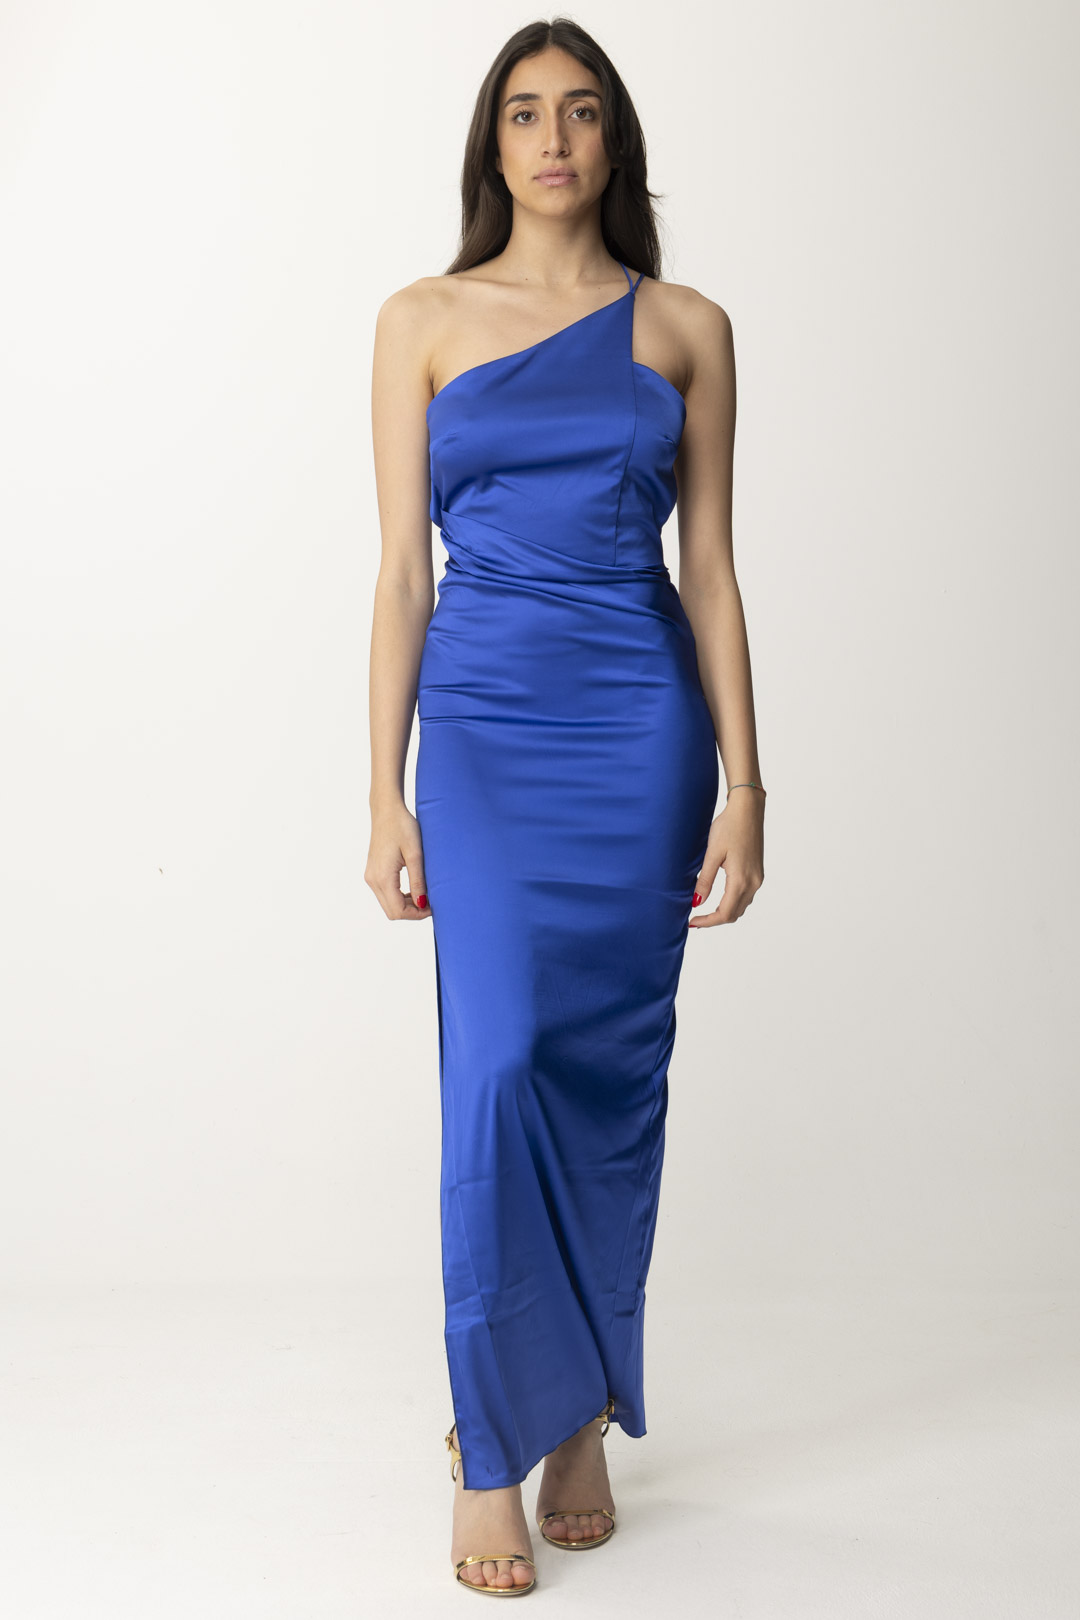 Vorschau: Patrizia Pepe Langes Kleid mit asymmetrischem Ausschnitt Blue Wave